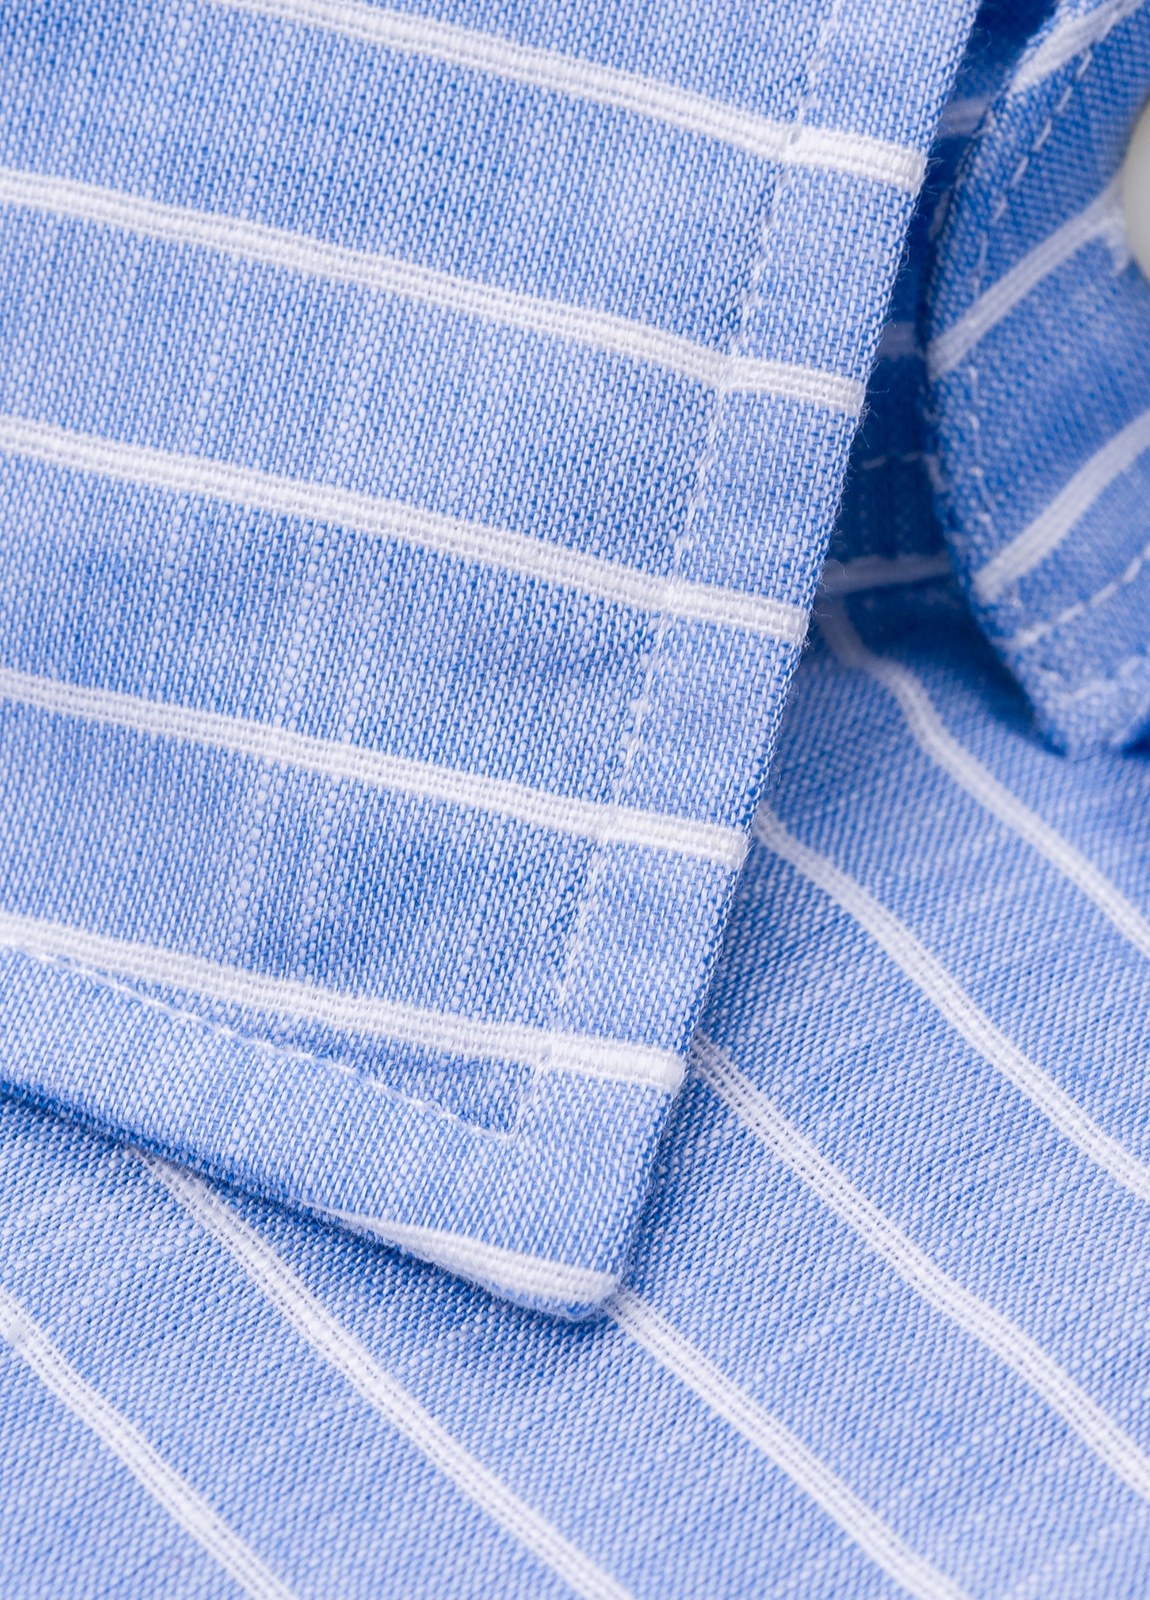 Camisa sport FUREST COLECCIÓN algodón y lino rayas color celeste - Ítem3